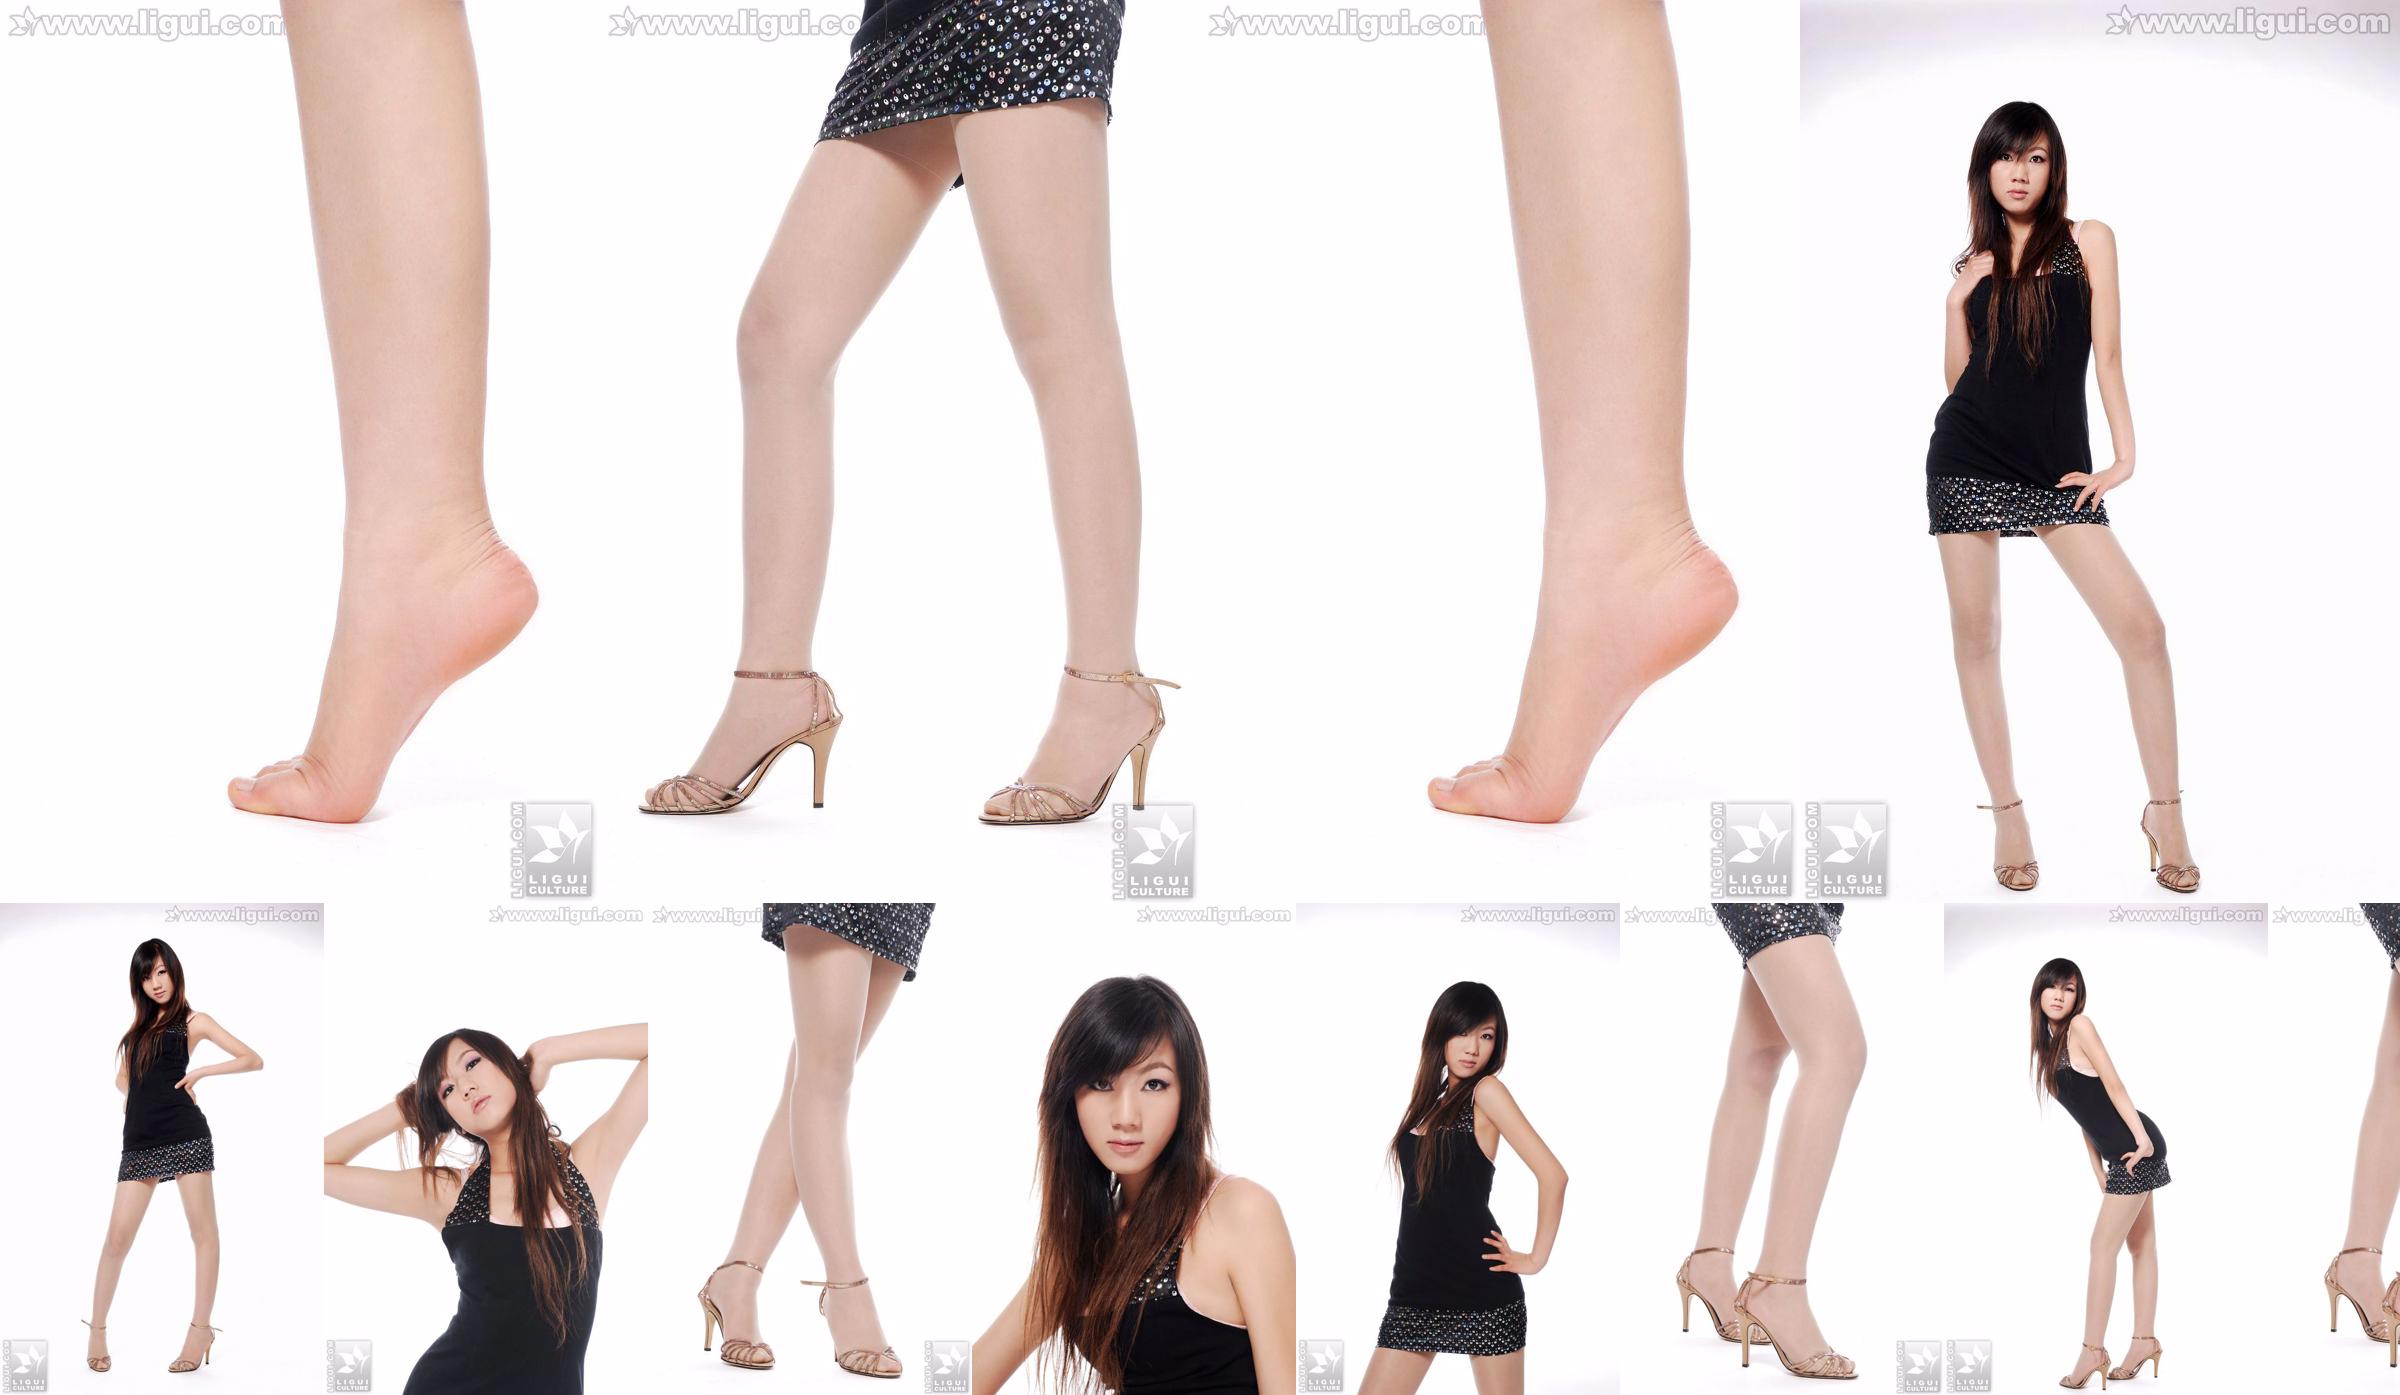 Modelo Sheng Chao "lindo novo show de pé de jade de salto alto" [Sheng LiGui] Foto de belas pernas e pé de jade No.dcef5b Página 1